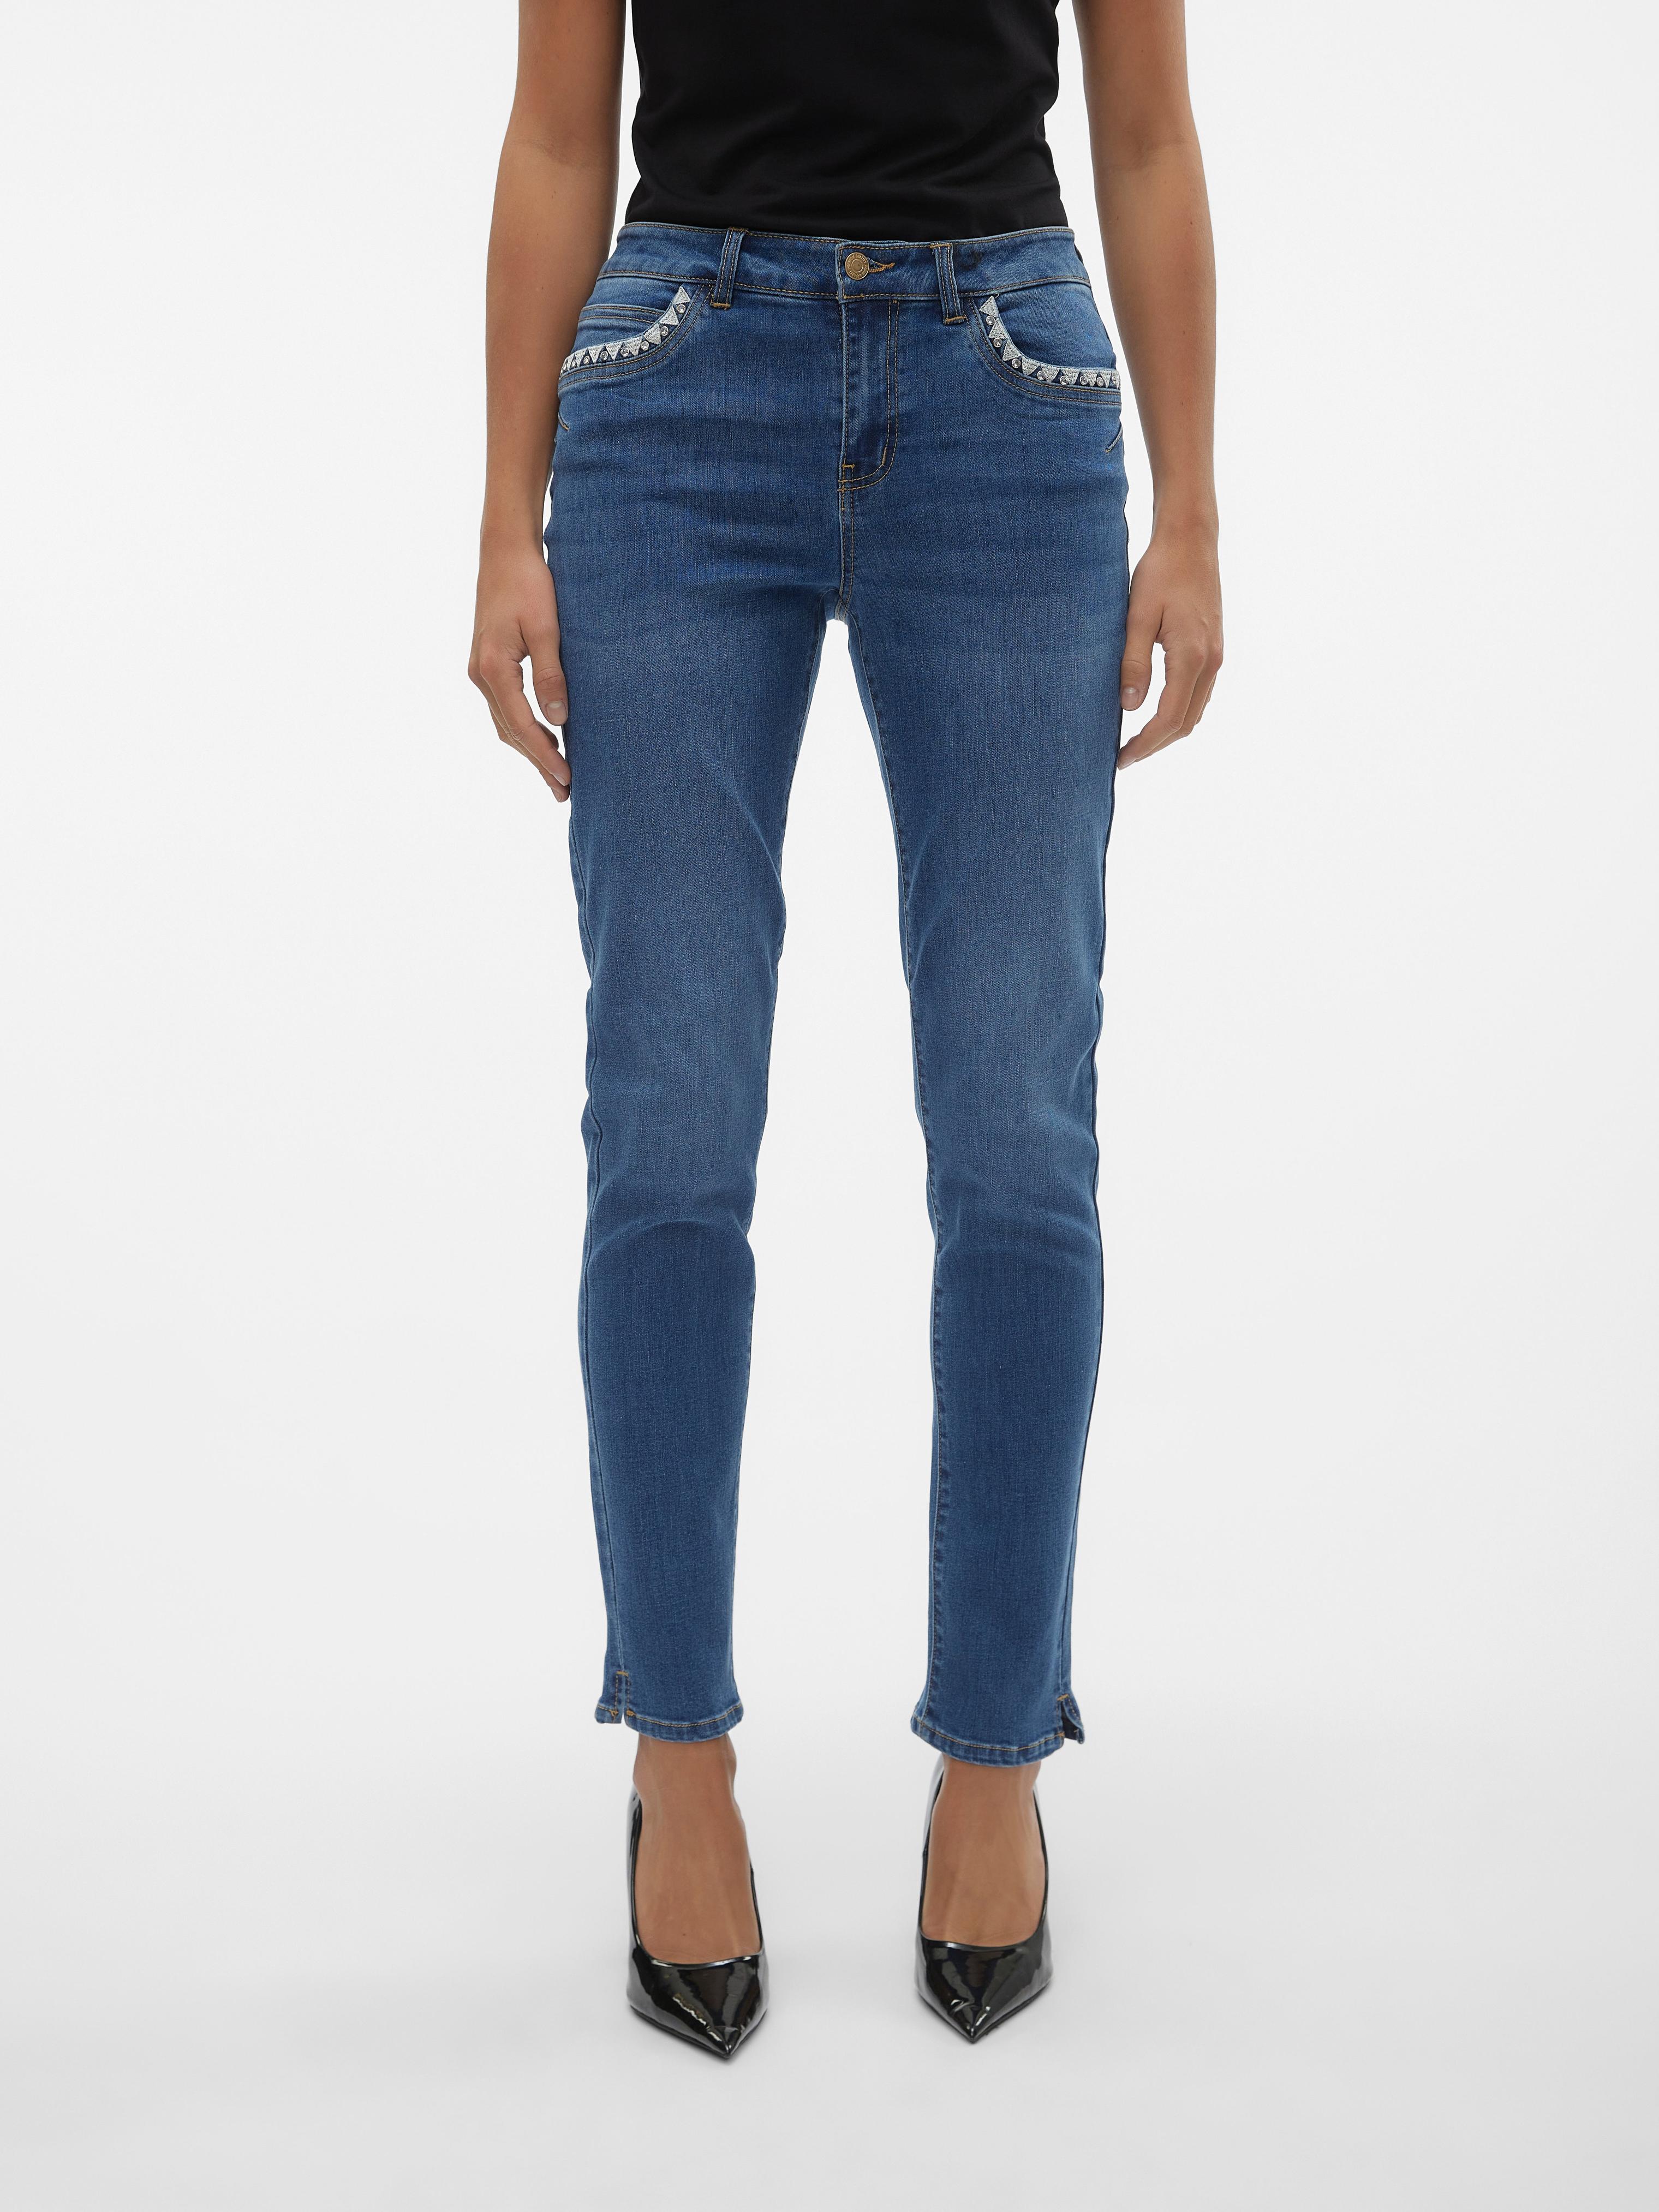 Vero Moda içinde 35,99 TL fiyatına VMYOURS Mid Rise Verjüngt Jeans fırsatı